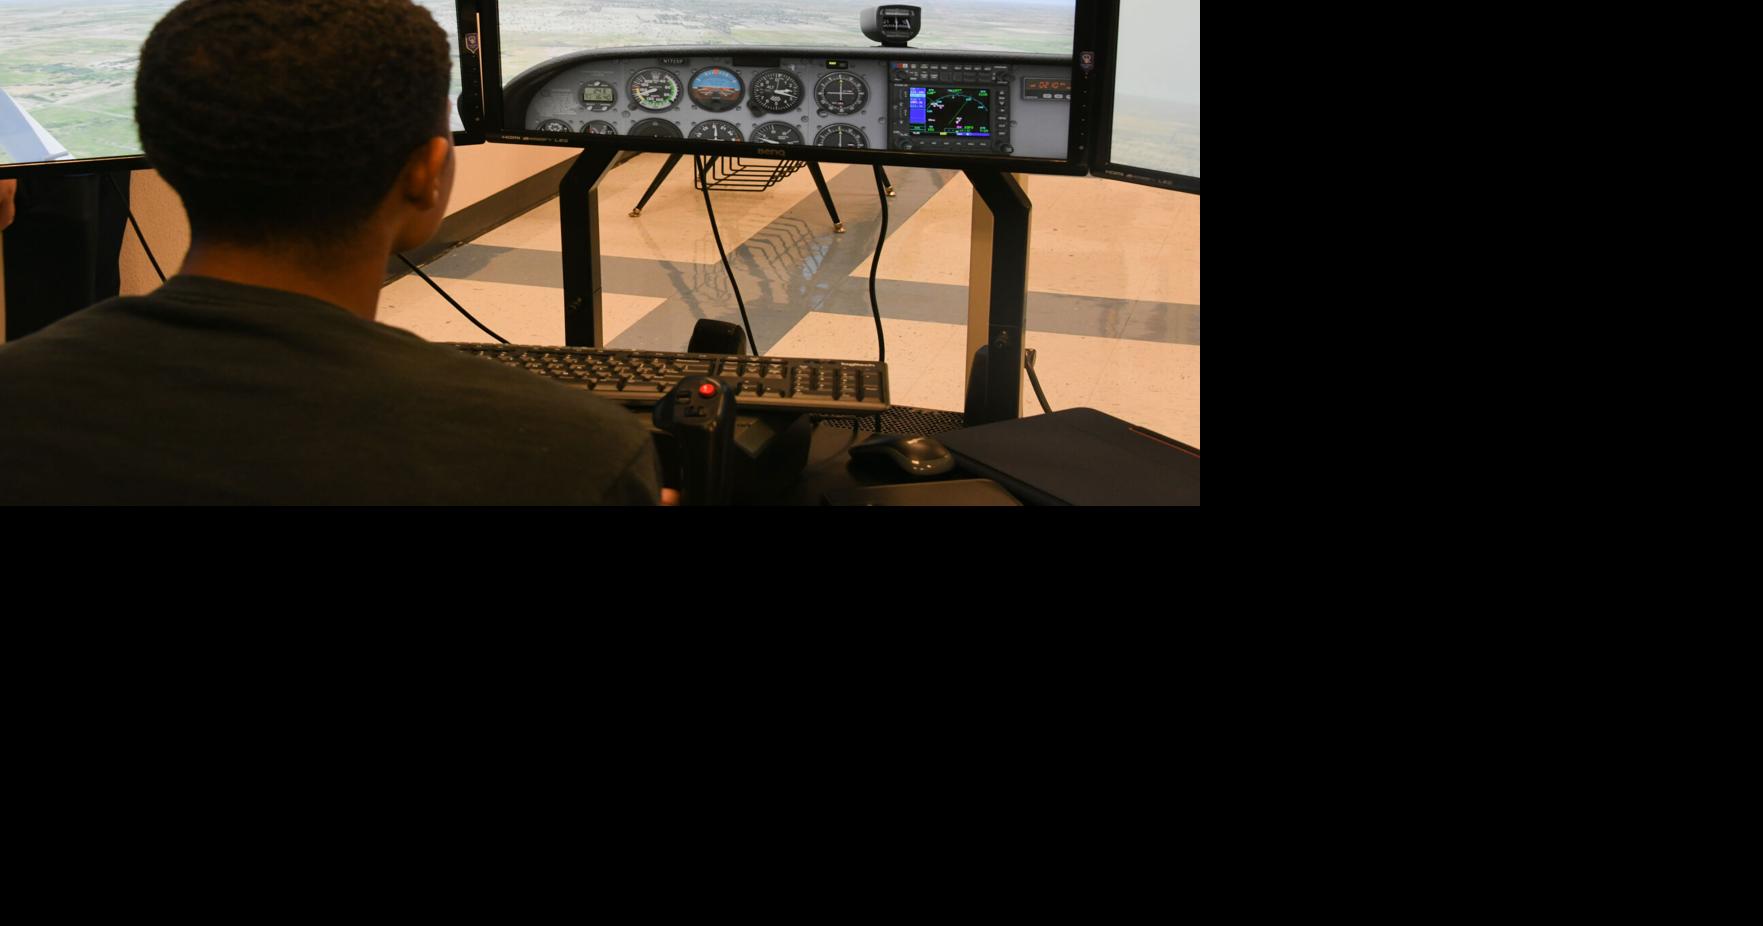 Altus pilots educate aspiring Airmen in flight simulator program